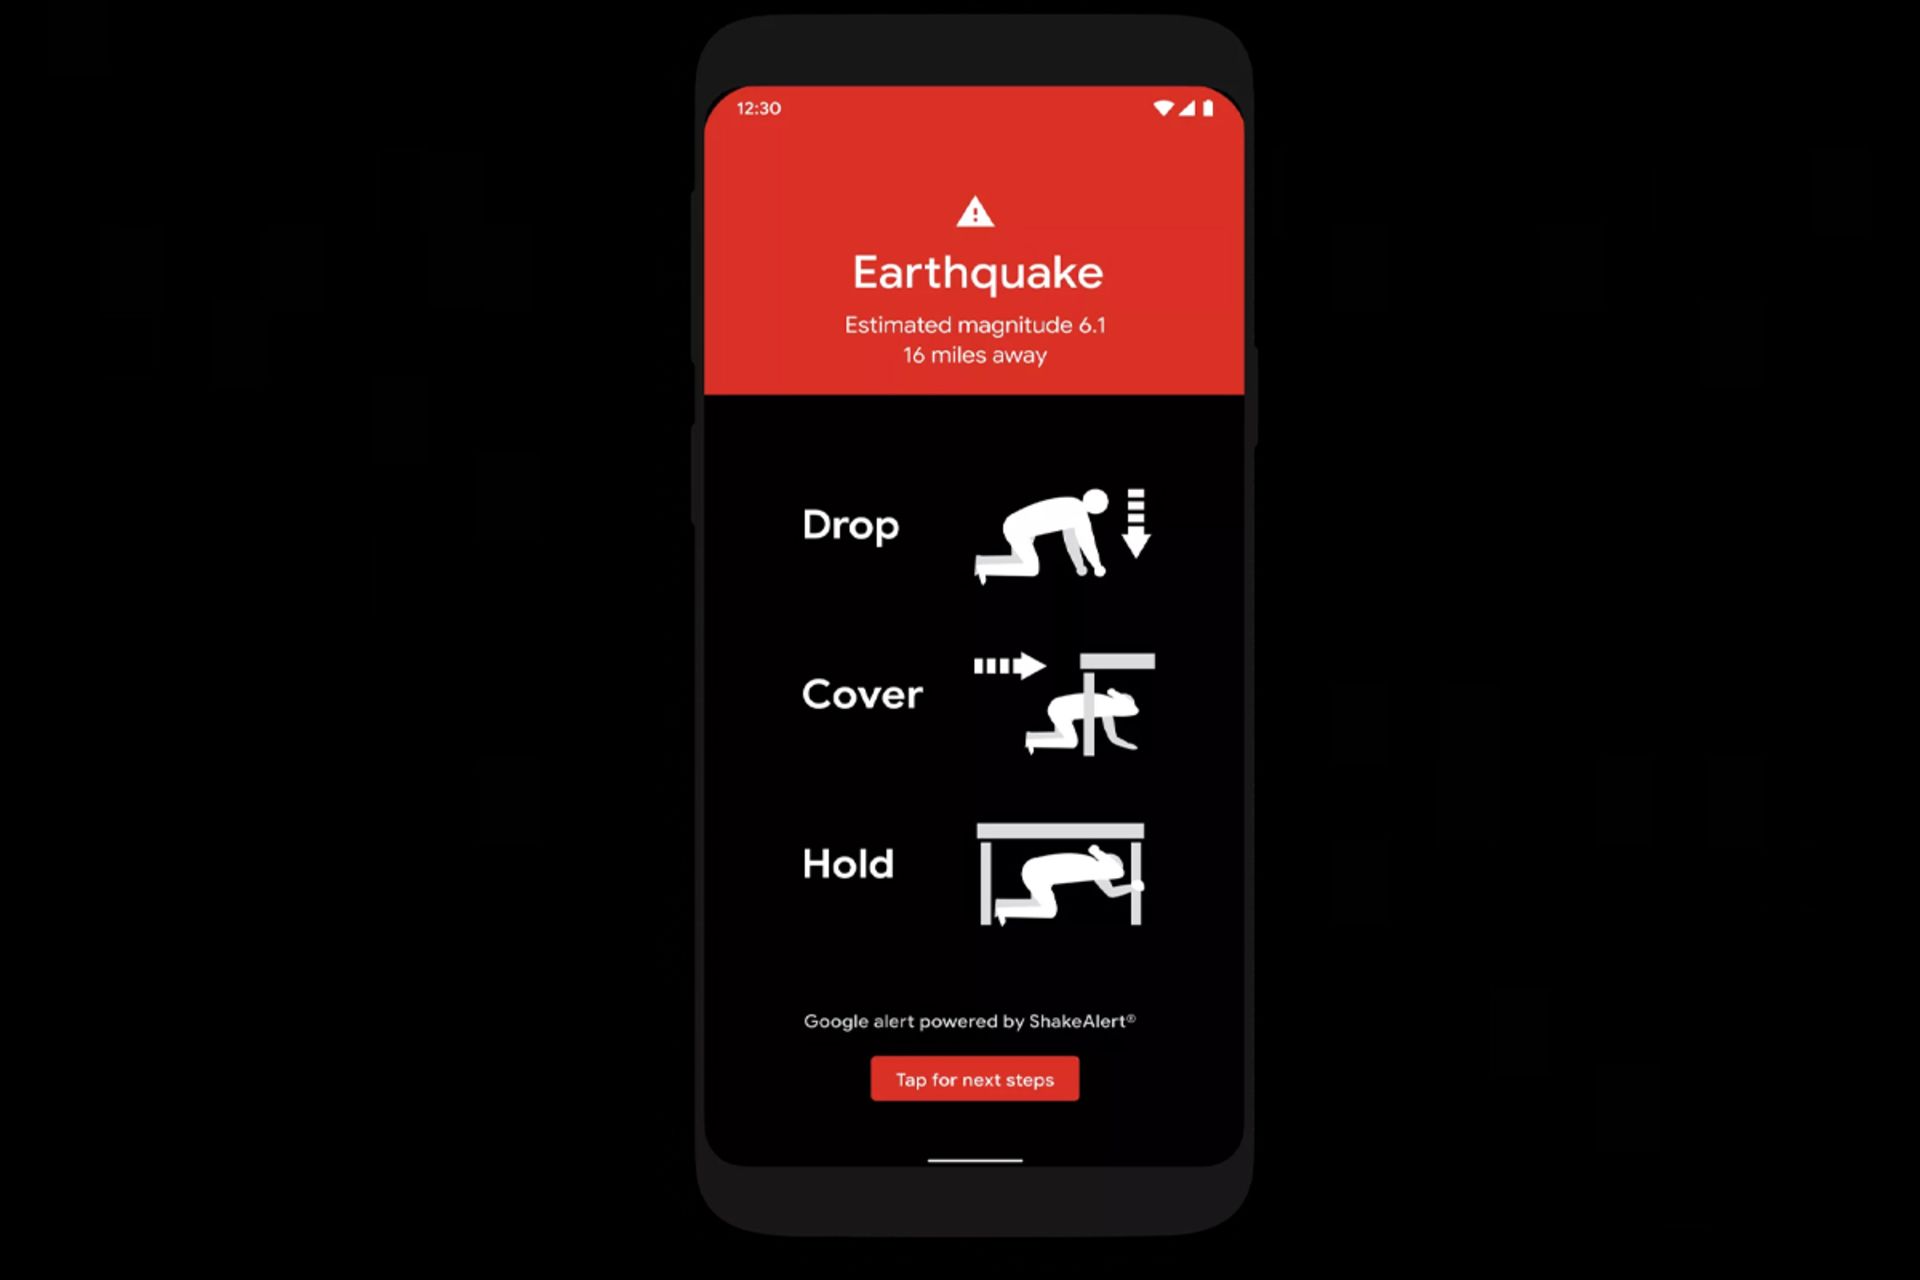 هشدار زمین لرزه سیستم تشخیص زلزله گوگل / Google